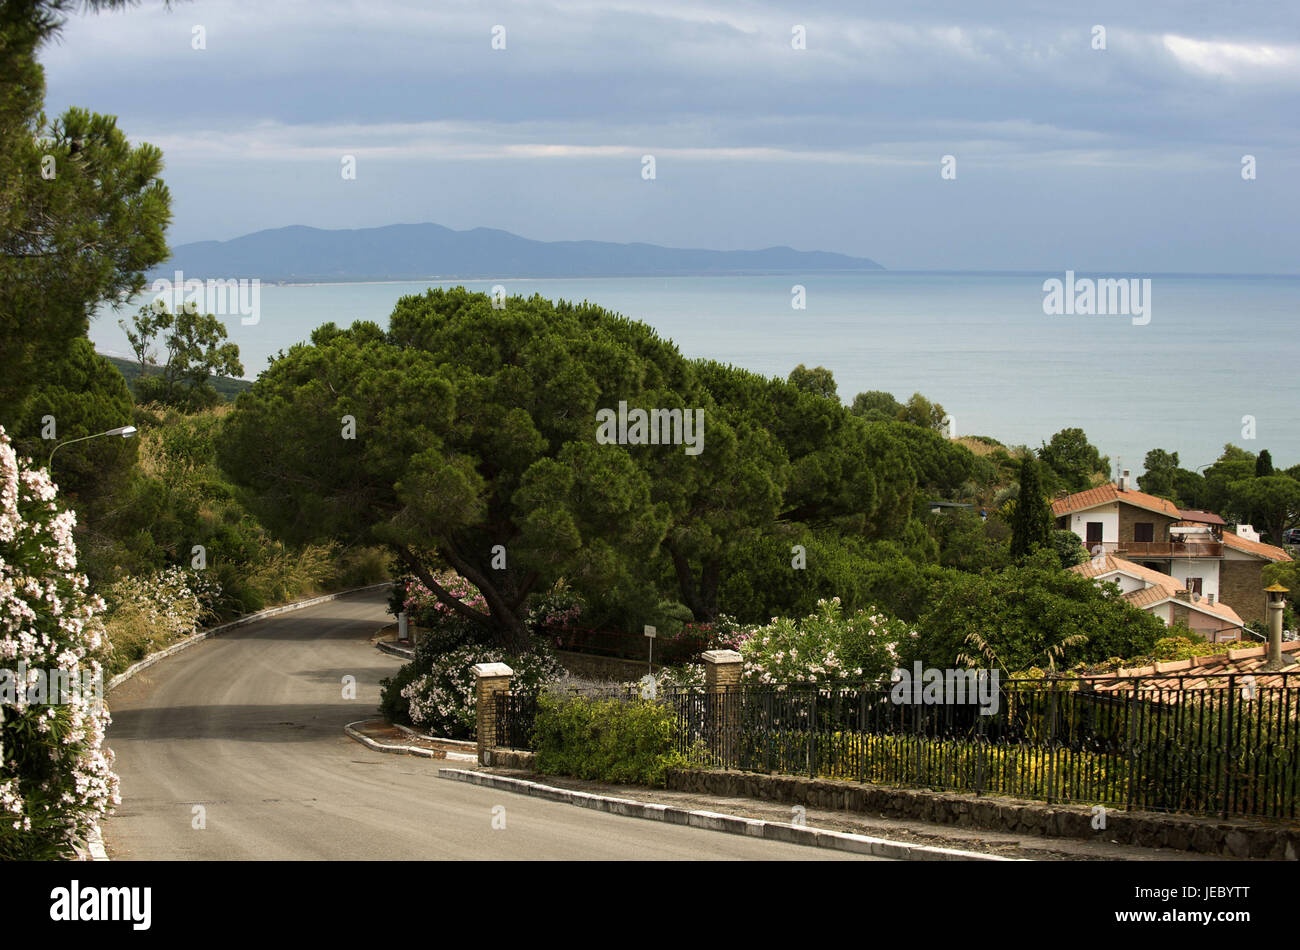 Italy, Tuscany, La Maremma, Castiglione della Pescaia, street with slope, sea in the background, Stock Photo